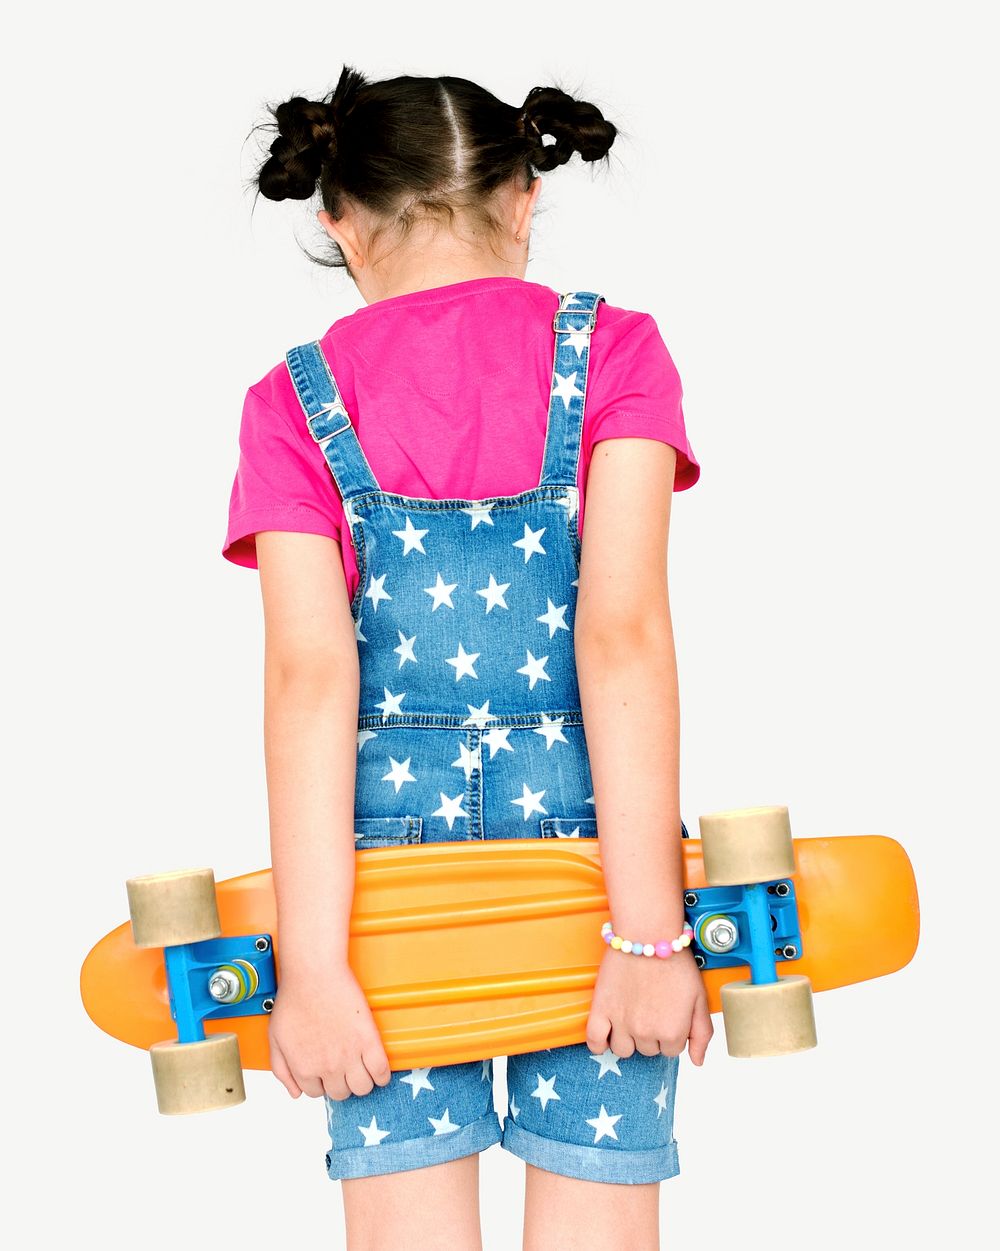 Girl holding skateboard design element psd